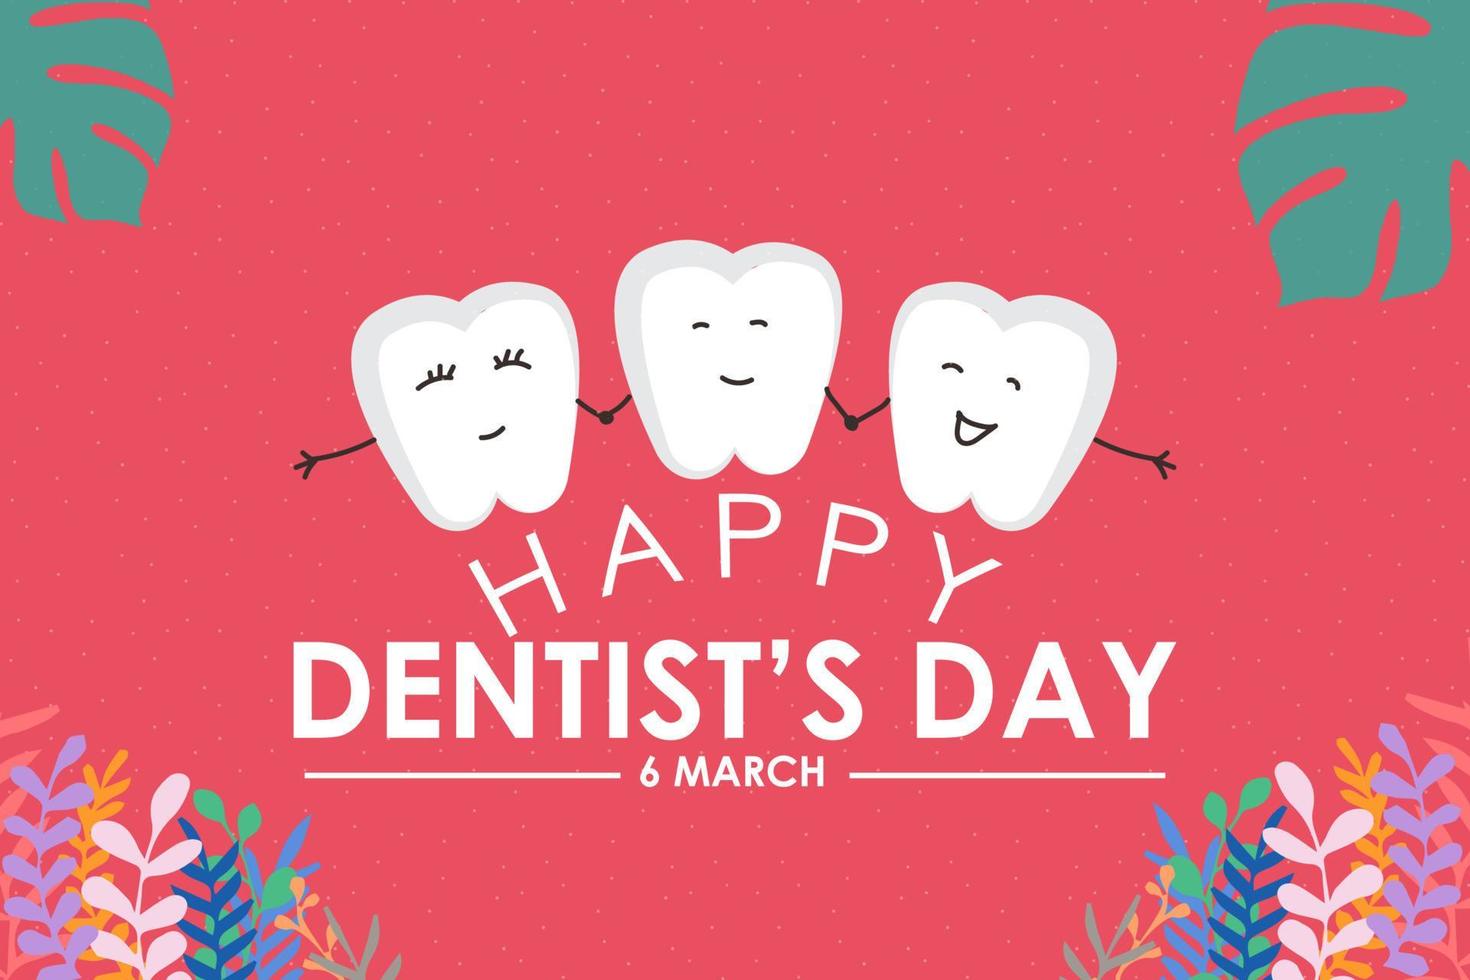 diseño de plantilla de vector de logotipo de feliz día del dentista